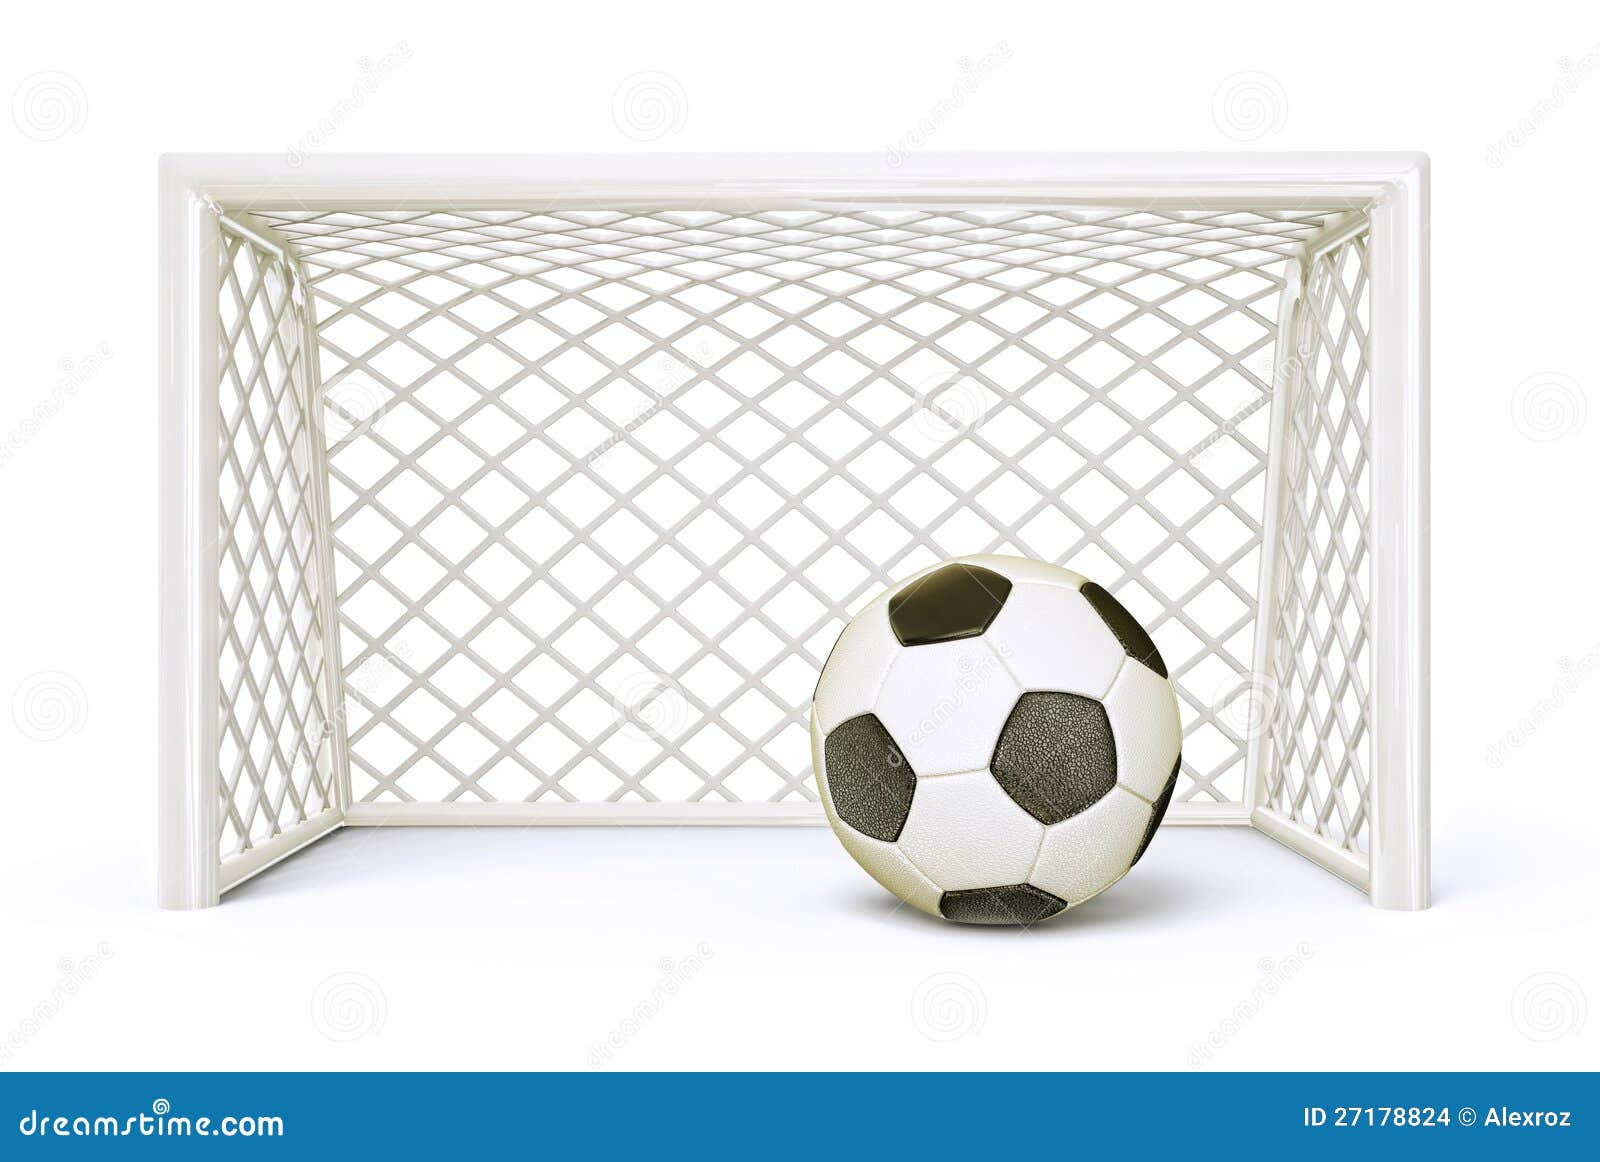 soccer-goal-stock-illustration-illustration-of-poster-27178824